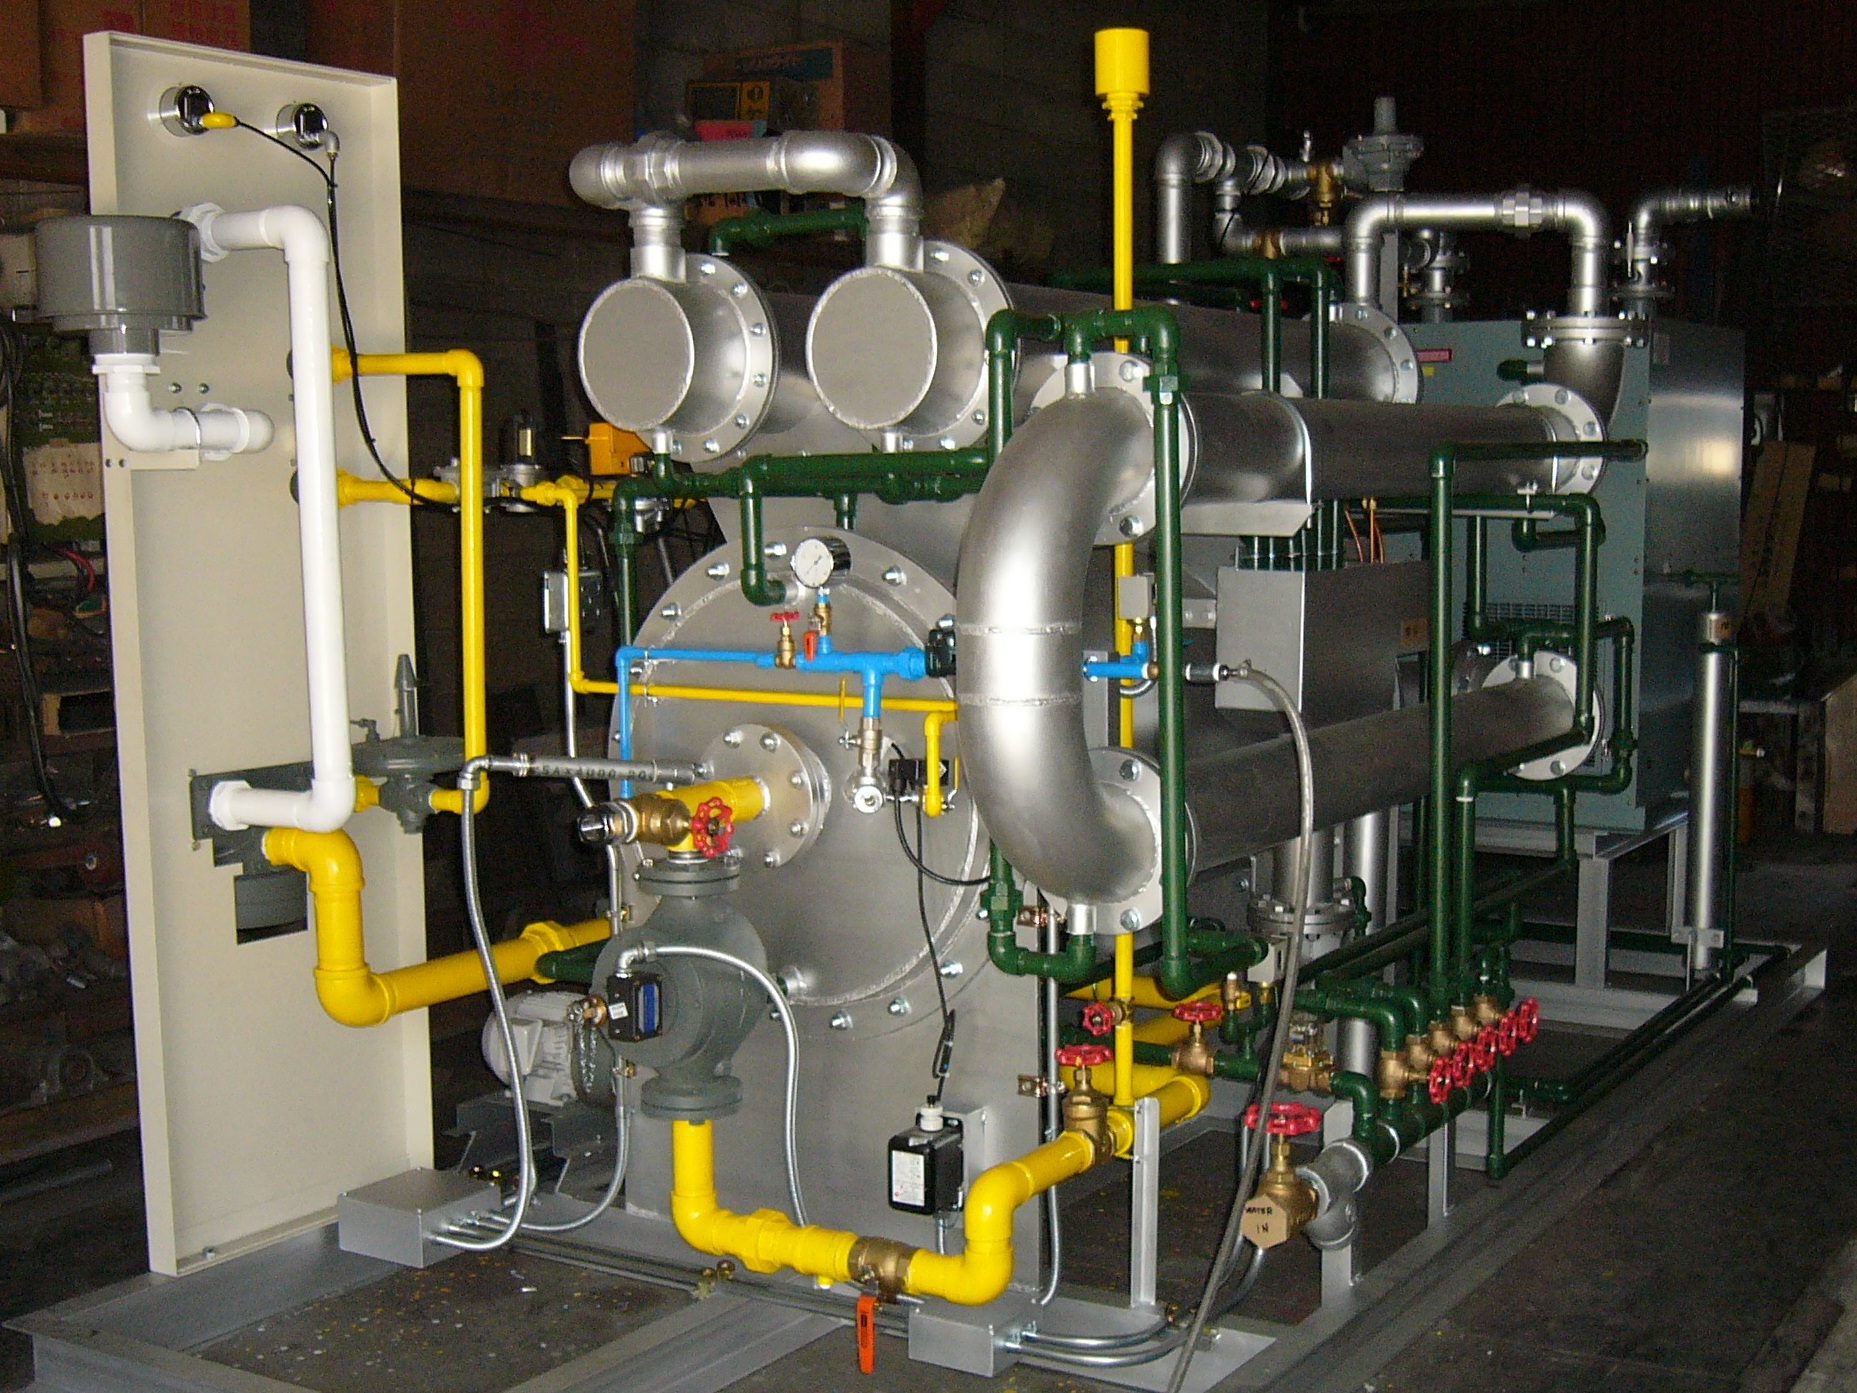 Heat-generating transforming gas generator (DX Gas)